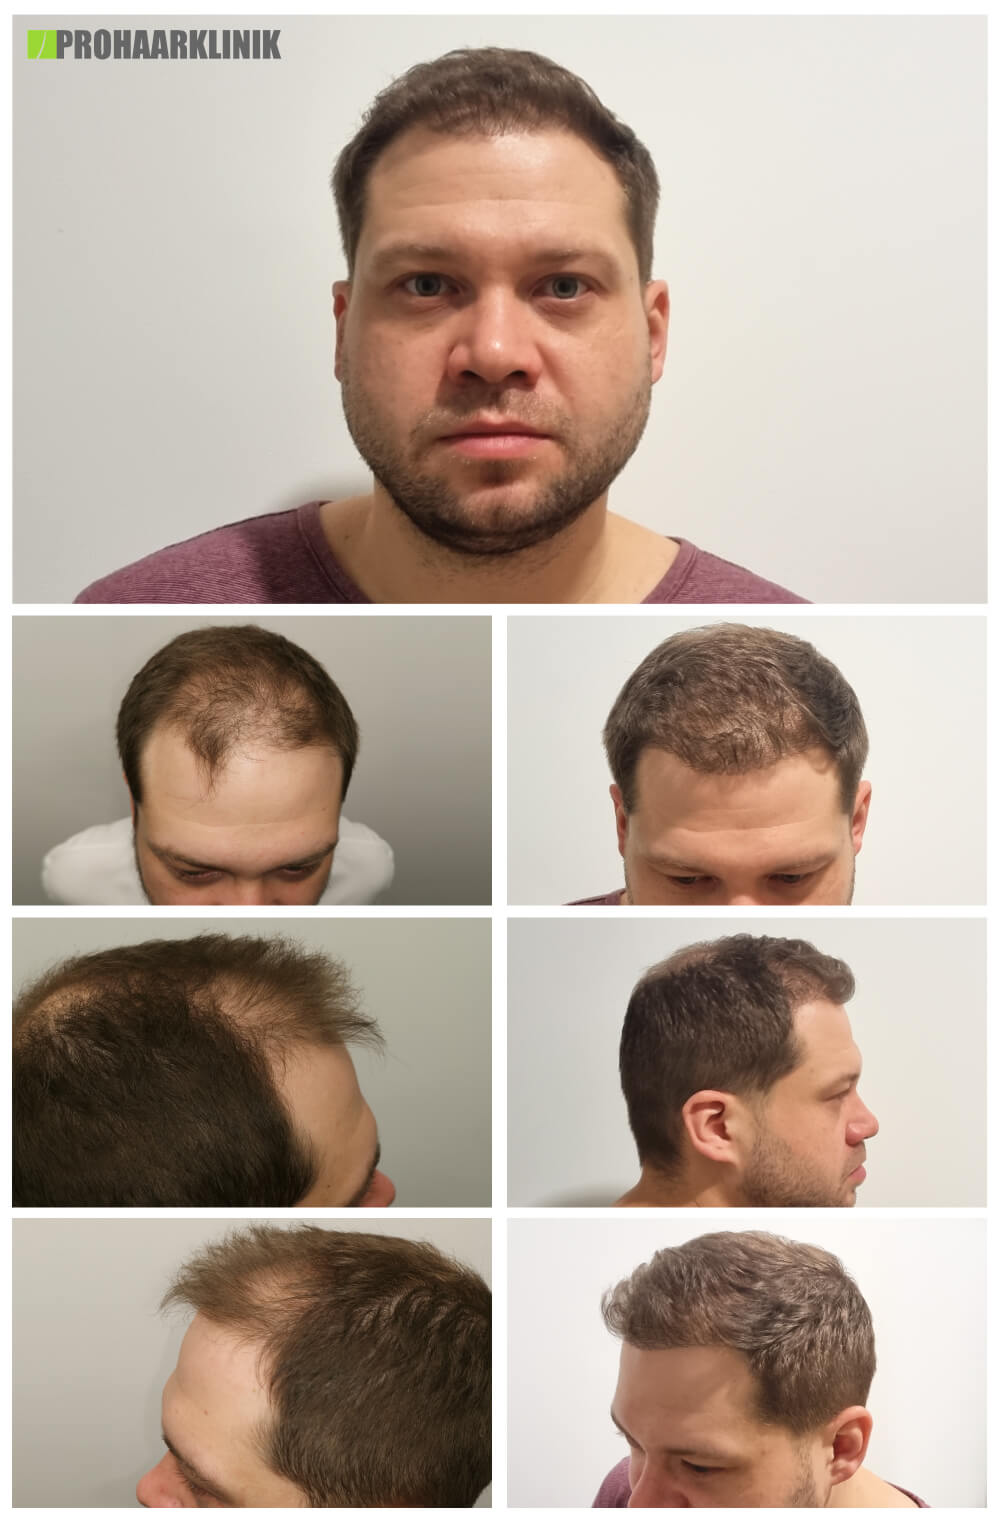 Haartransplantation vorher-nachher (Mate) - PROHAARKLINIK